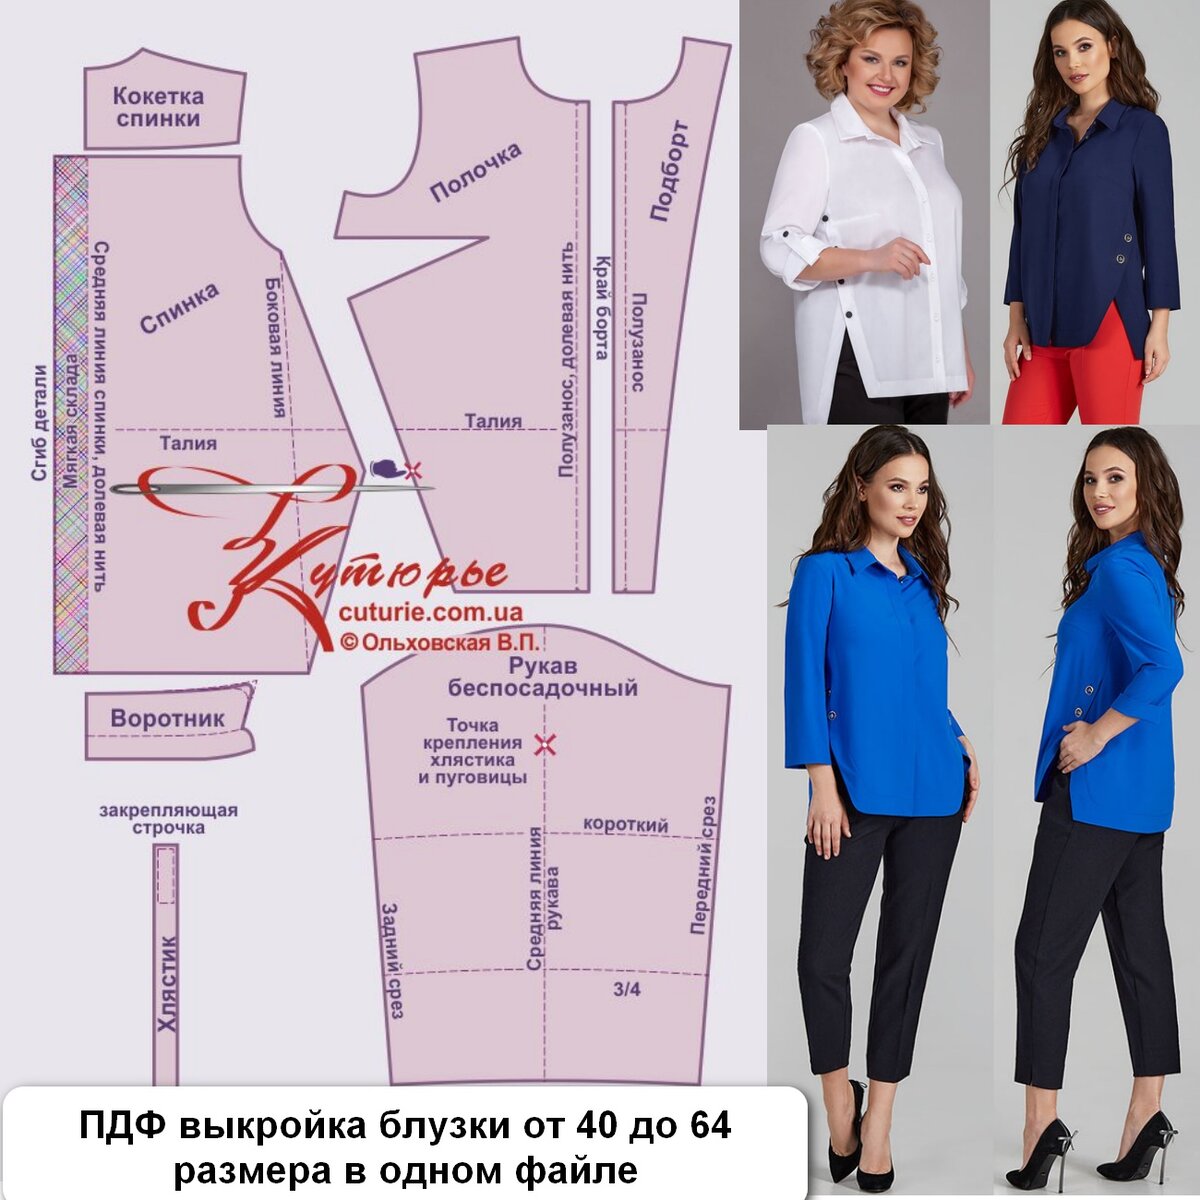 Выкройка блузки для начинающих портних. Простейшие выкройки блузок :: SYL.ru